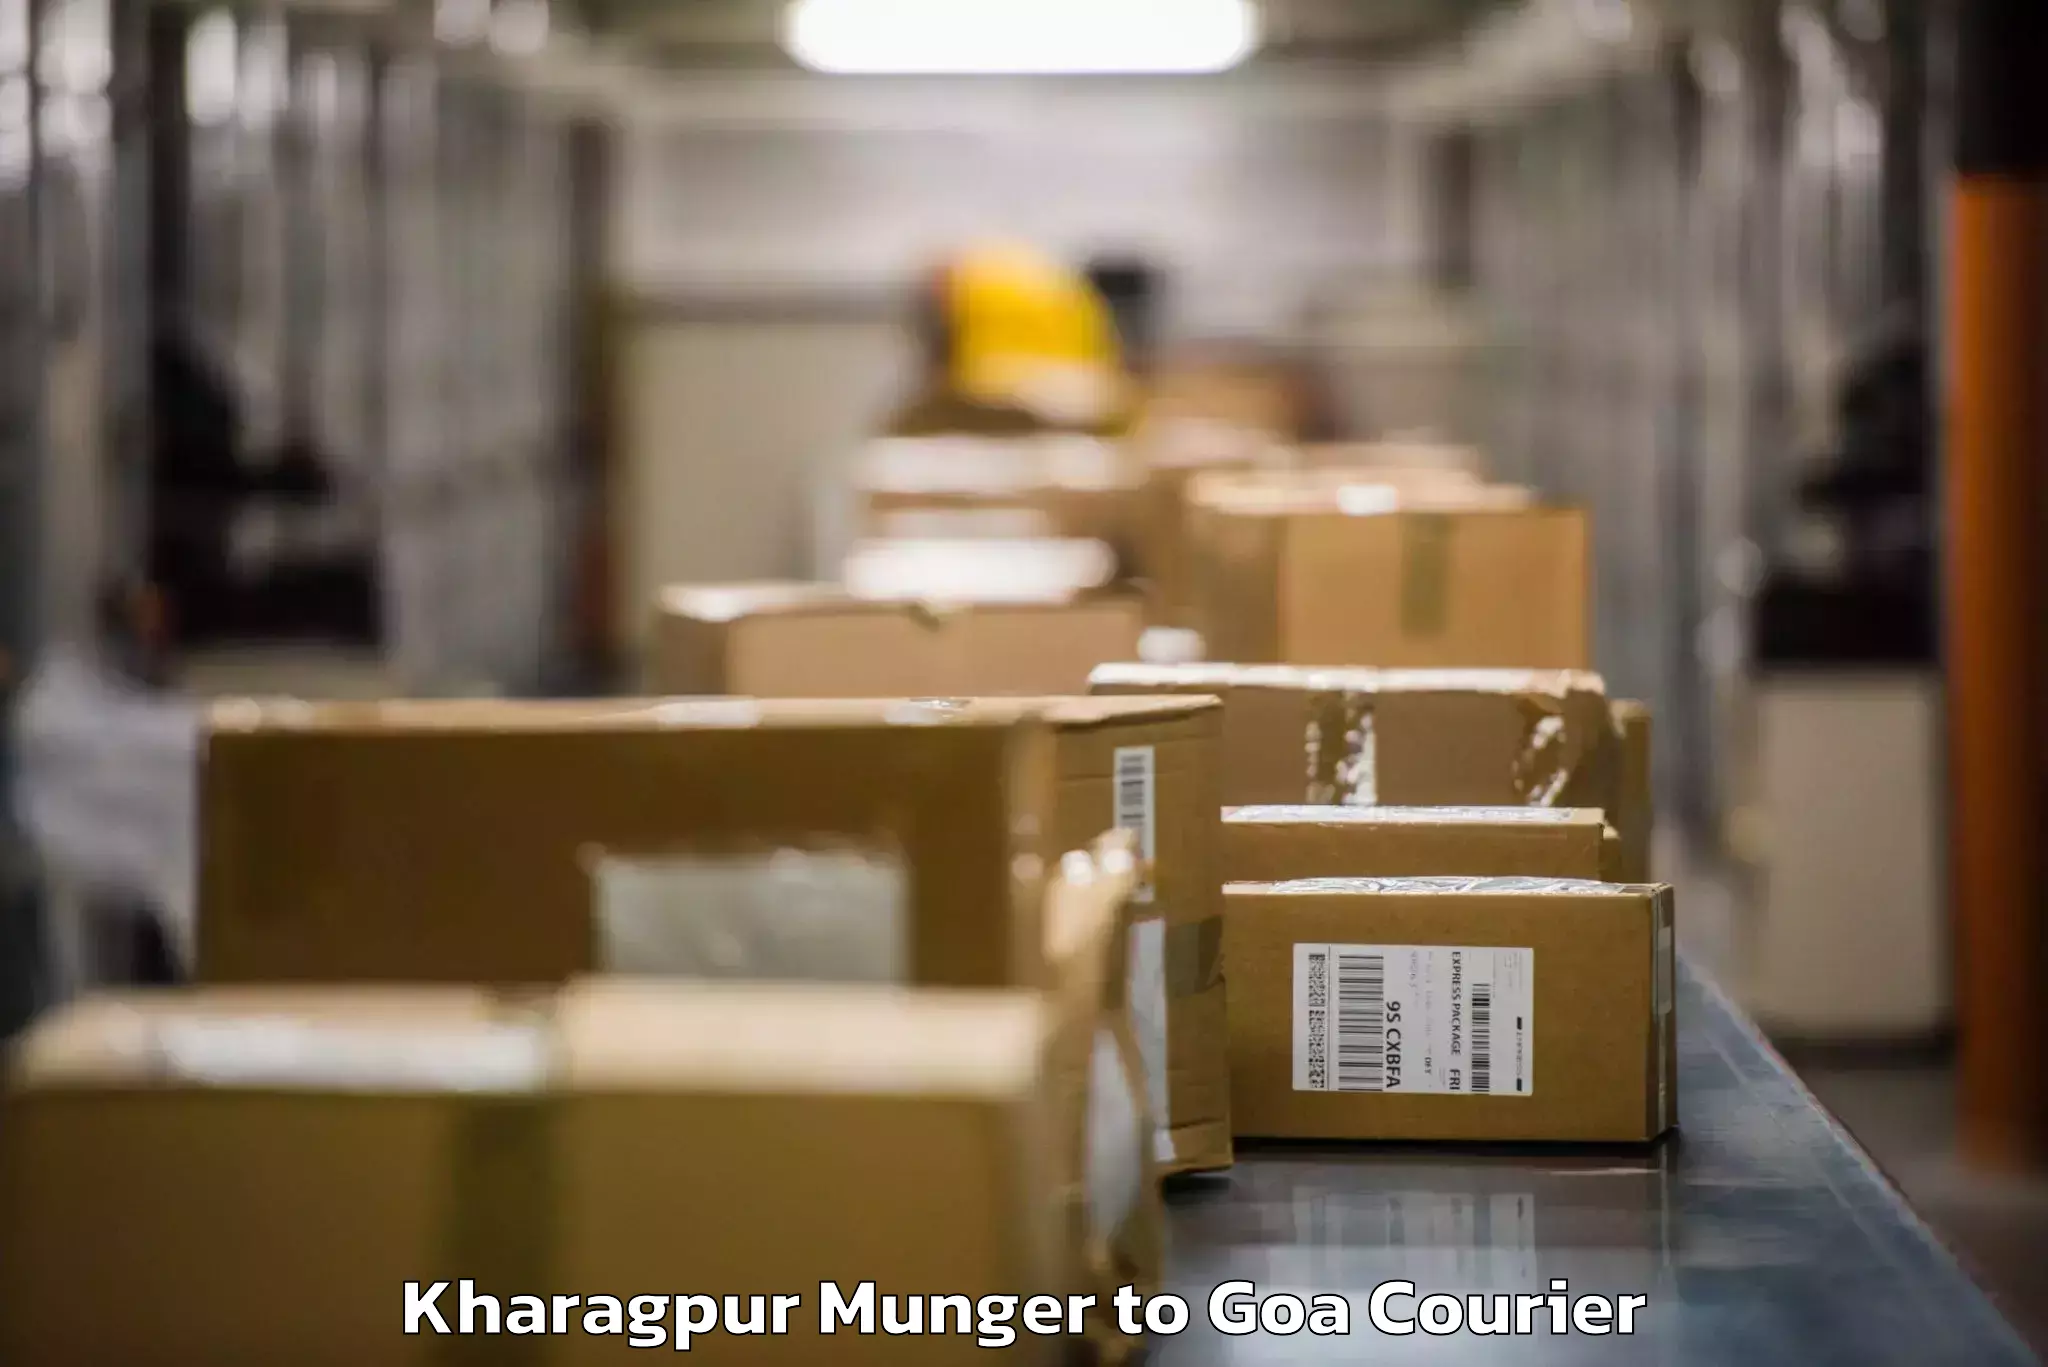 Baggage shipping calculator Kharagpur Munger to Panaji